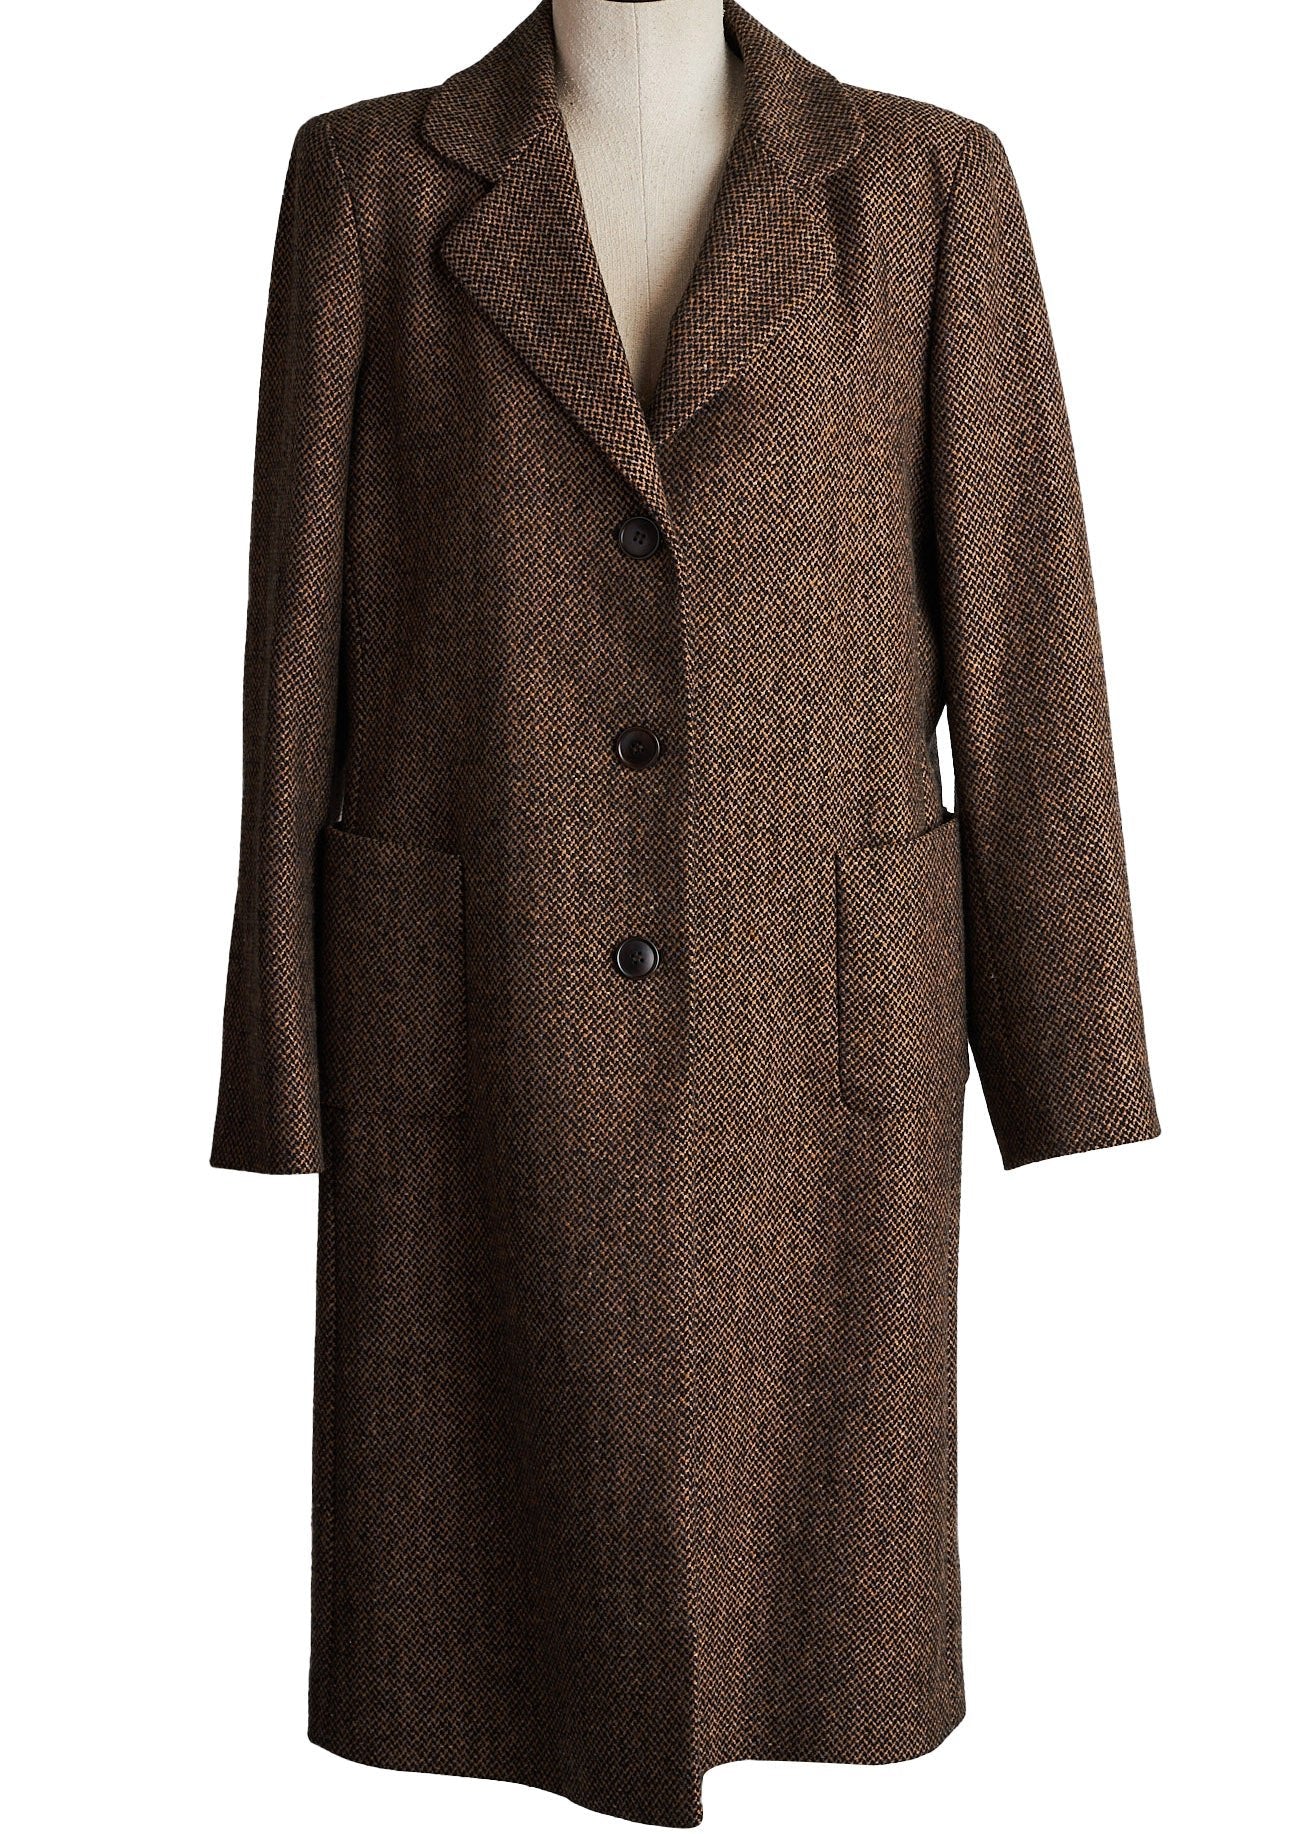 LOUIS FERAUD Vintage Luxury Designer Long Cream Beige Coat